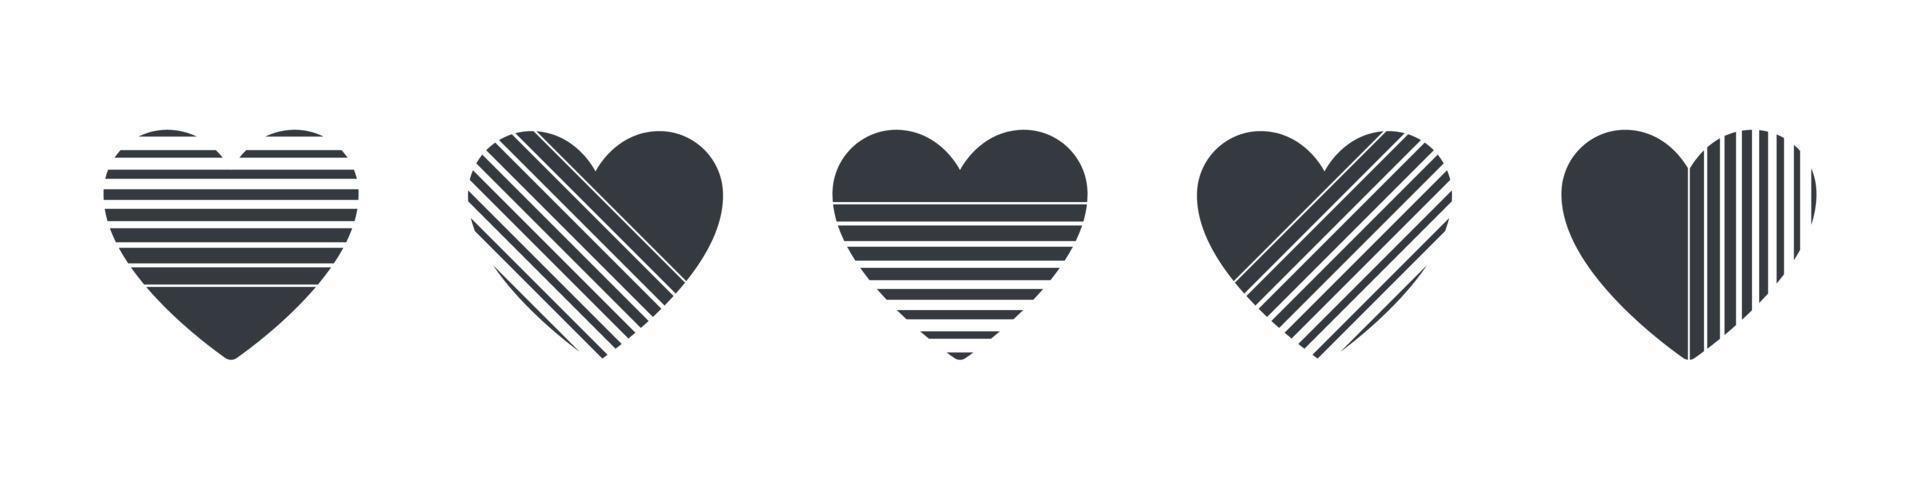 hartjes pictogrammen. abstract getextureerde harten. harten reeks concept. vector illustratie